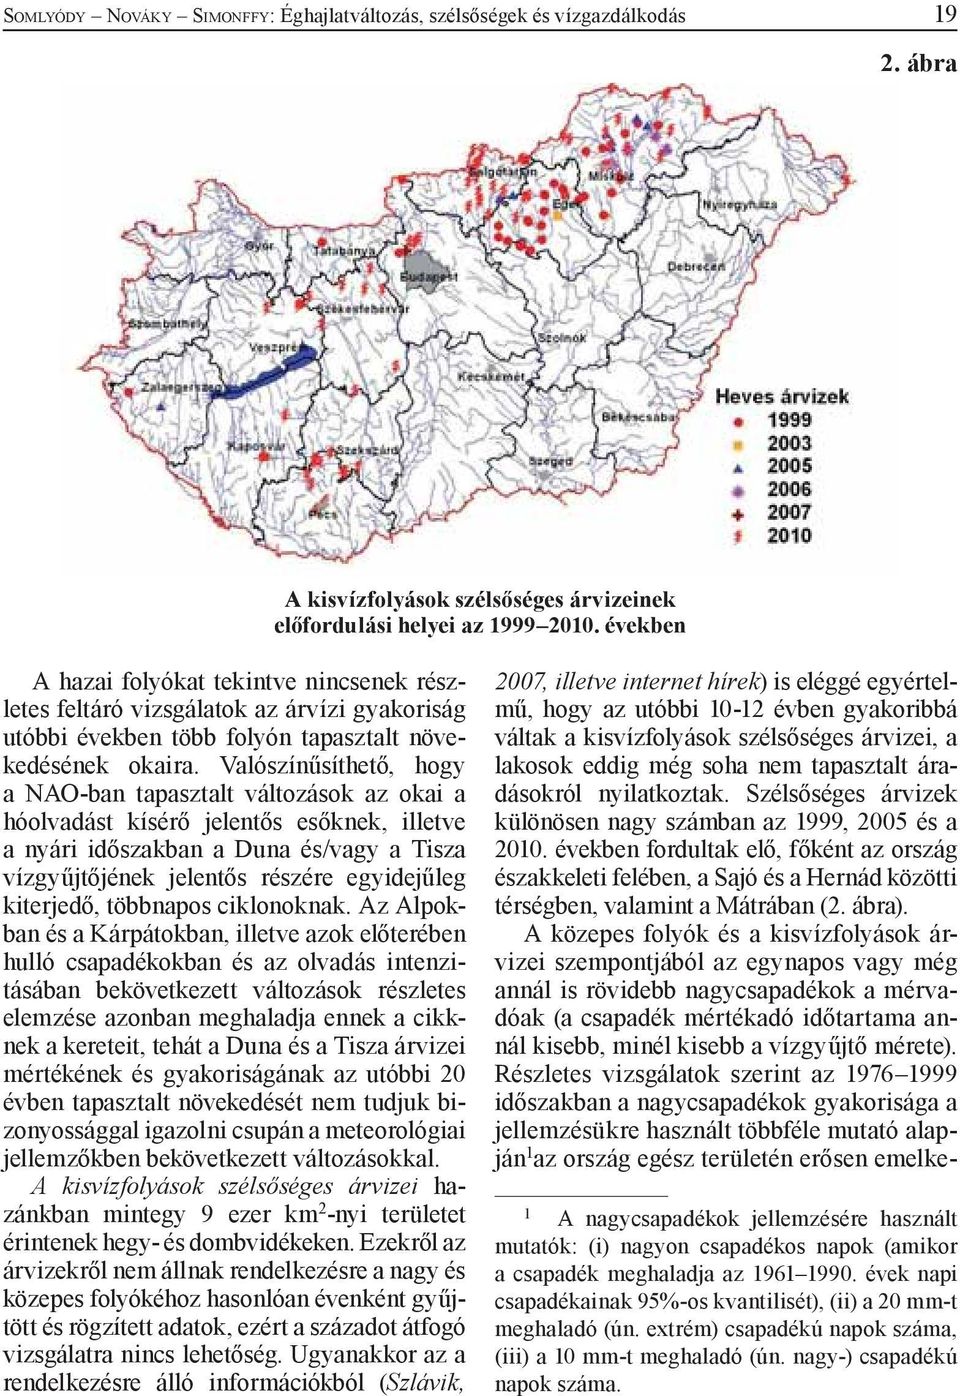 Valószínűsíthető, hogy a NAO-ban tapasztalt változások az okai a hóolvadást kísérő jelentős esőknek, illetve a nyári időszakban a Duna és/vagy a Tisza vízgyűjtőjének jelentős részére egyidejűleg